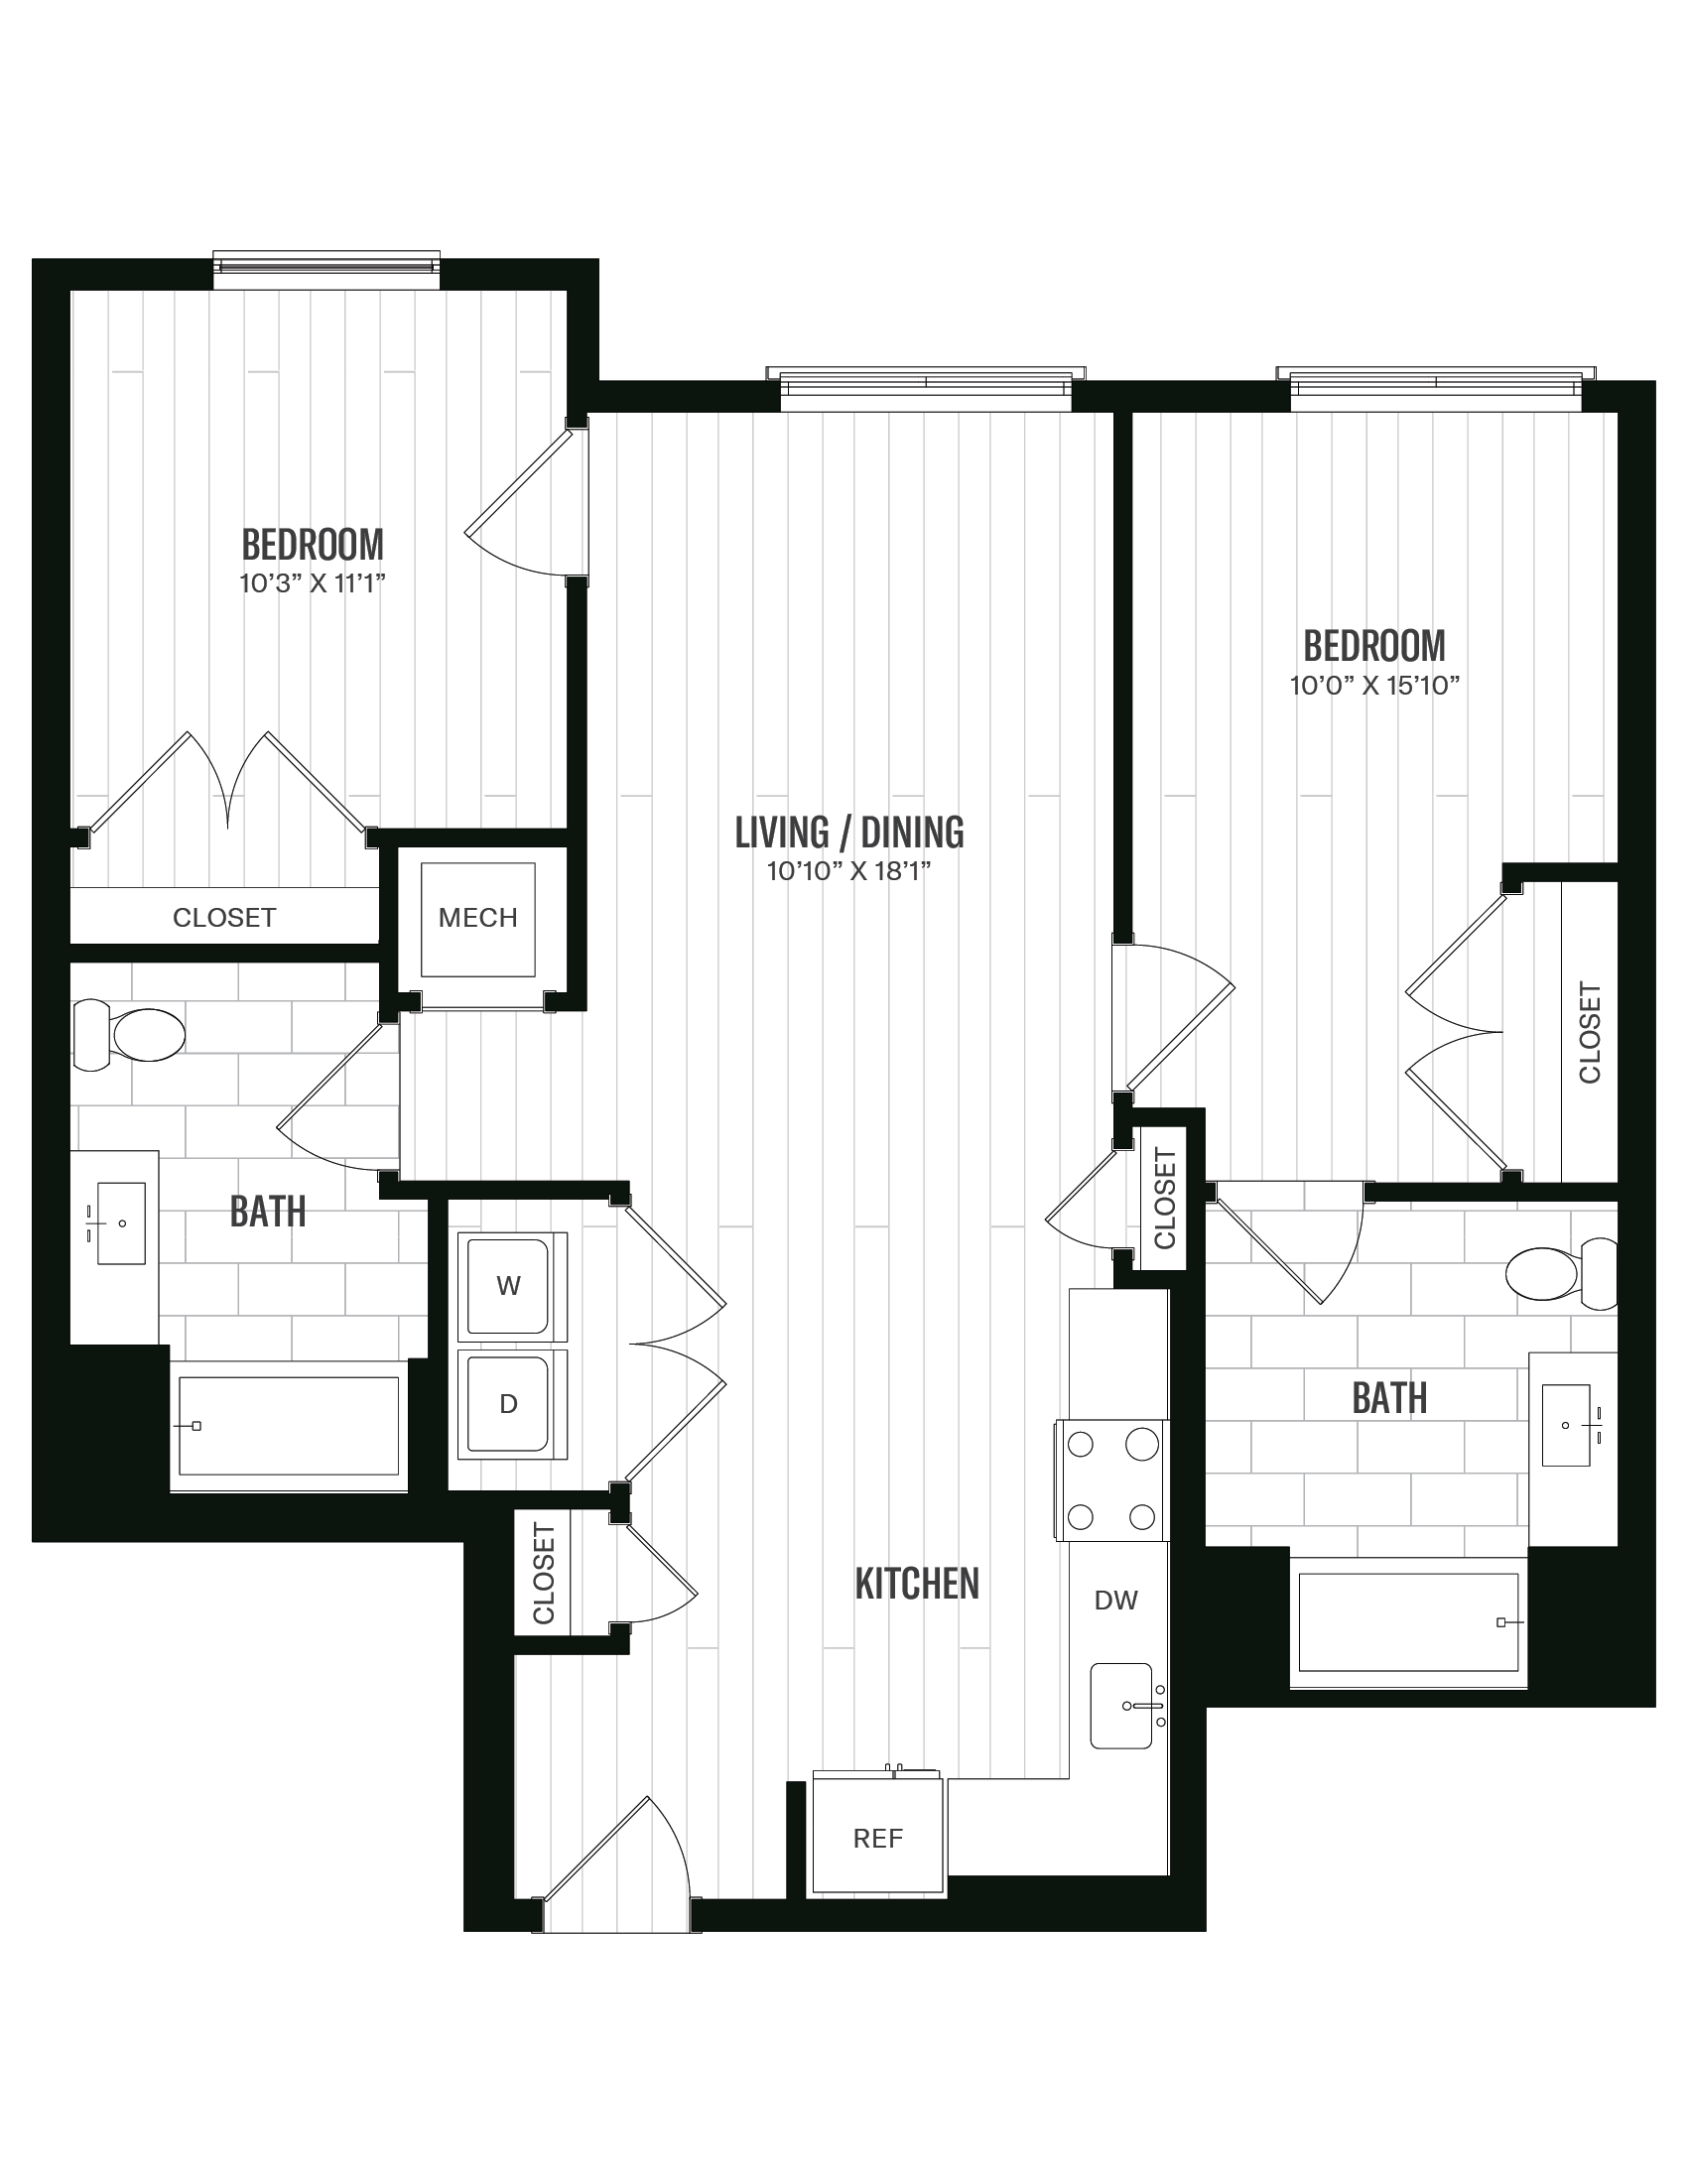 Floorplan image of unit 365